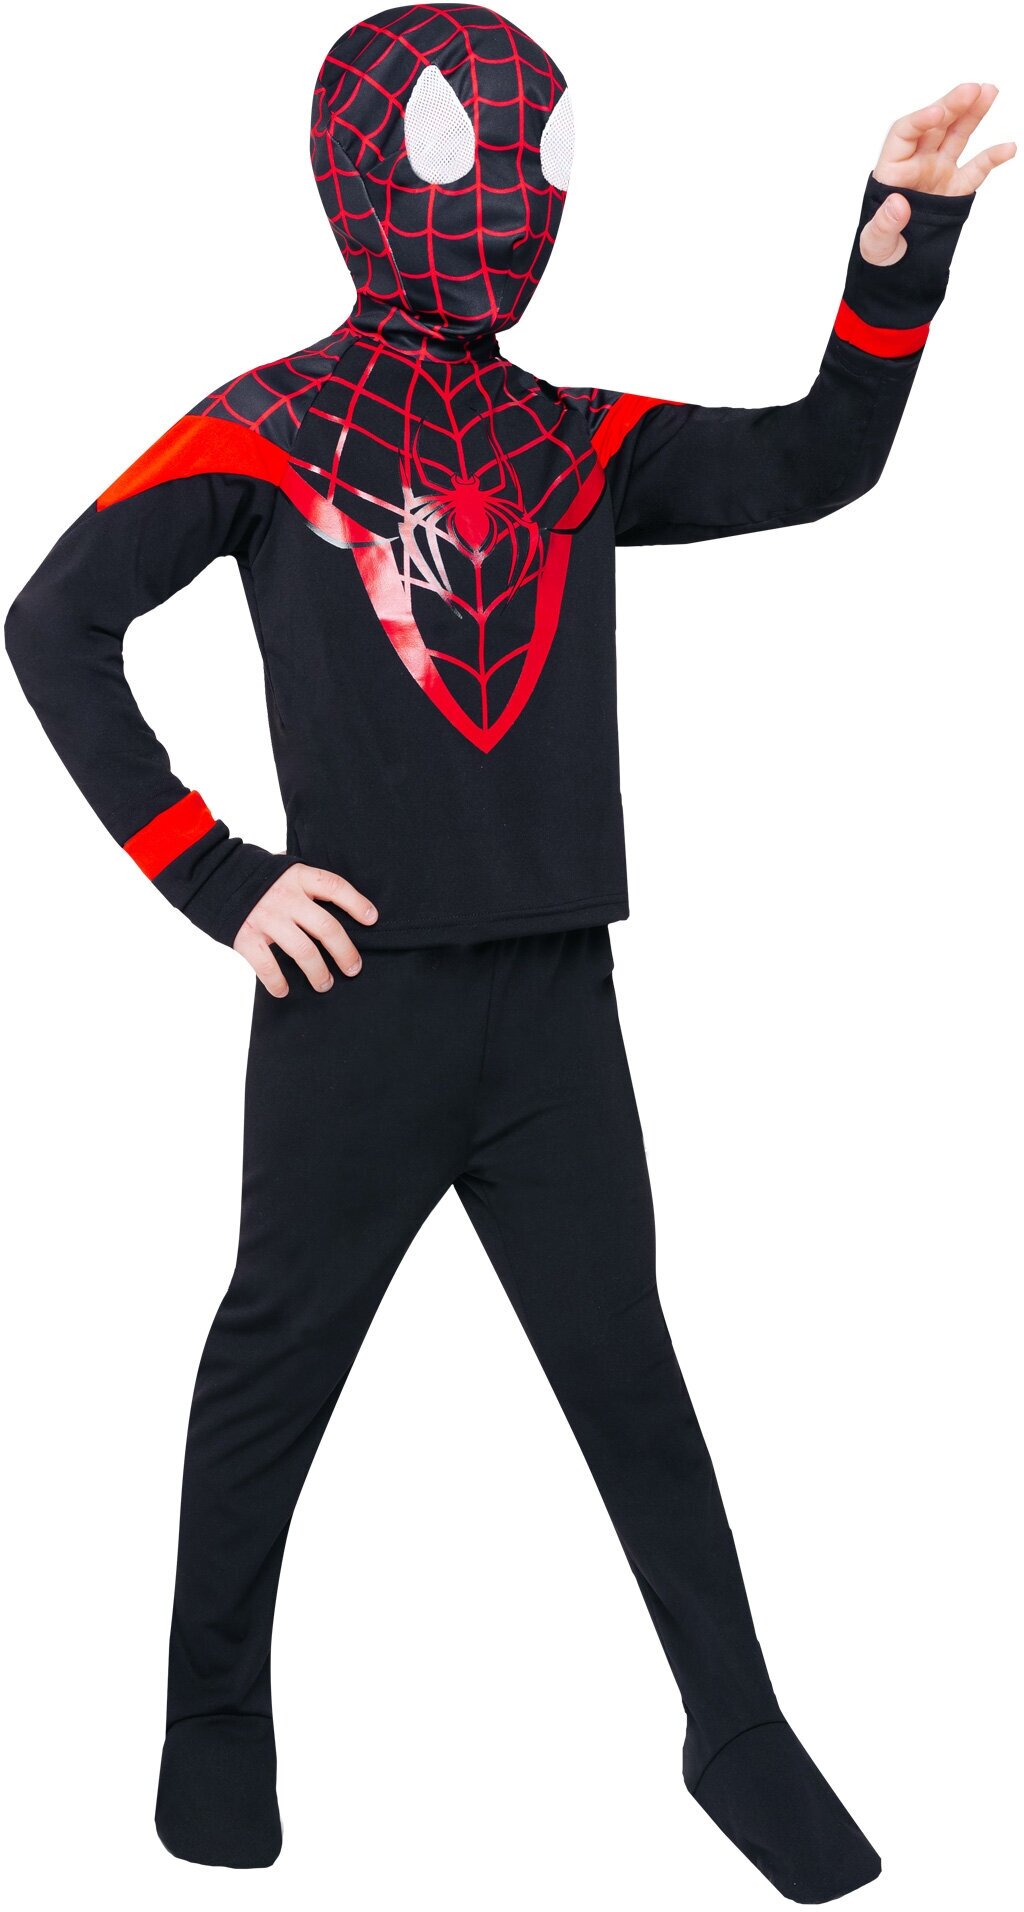 Костюм Человек-паук (9016 к-21), размер 110, цвет мультиколор, бренд Пуговка